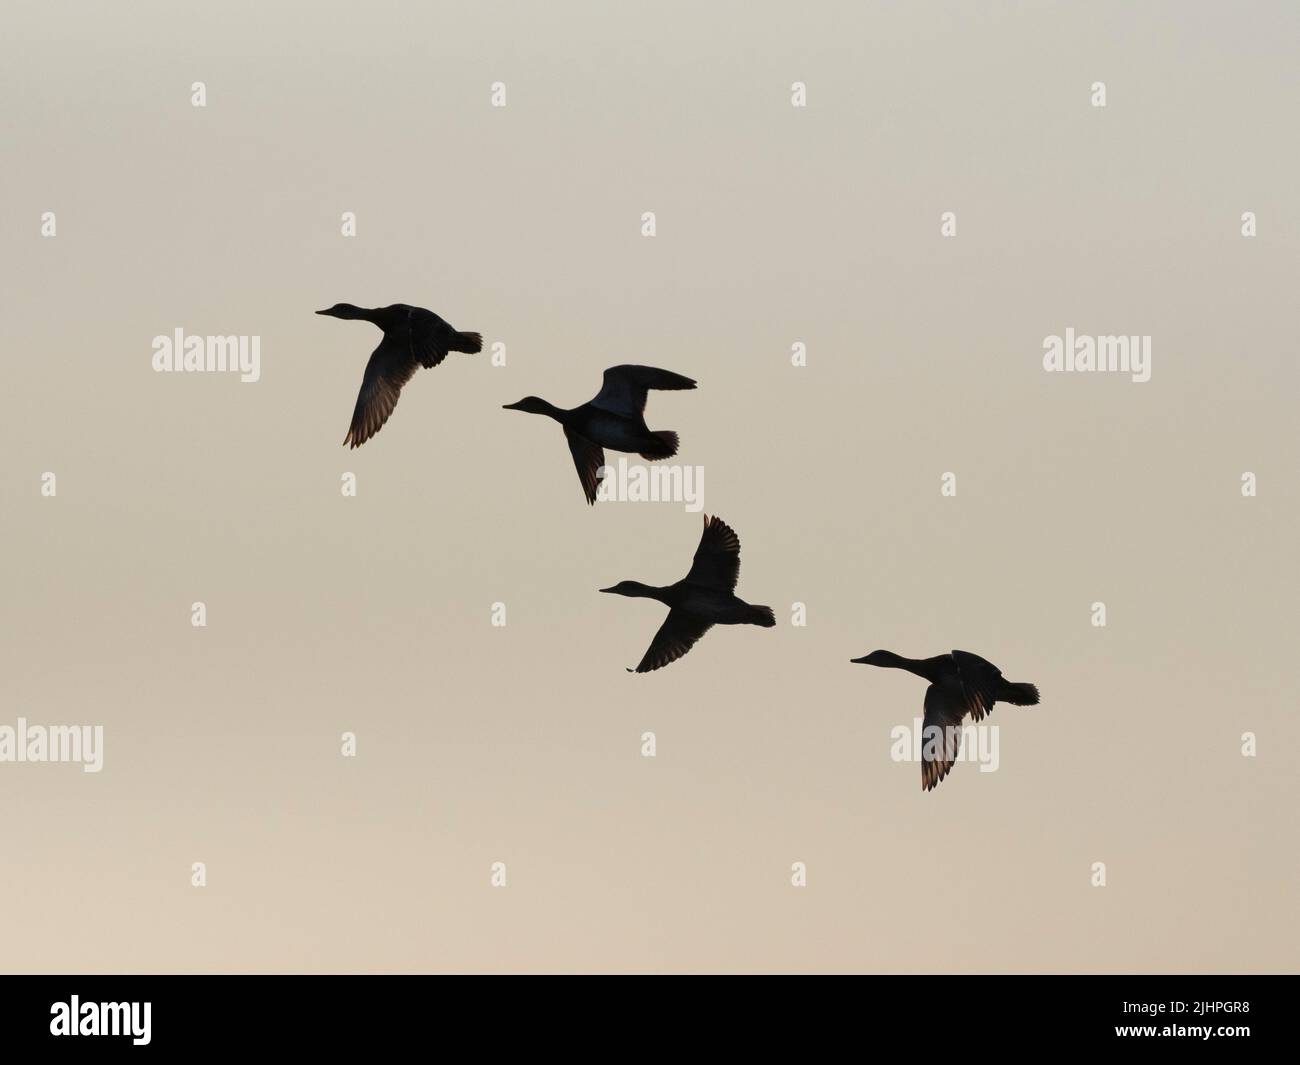 Groupe de Canards colverts (Anas platyrhynchos) volant contre le ciel du coucher du soleil, Restharrow trempe, Sandwich Bay Bird Observatory Trust, Kent, Royaume-Uni Banque D'Images